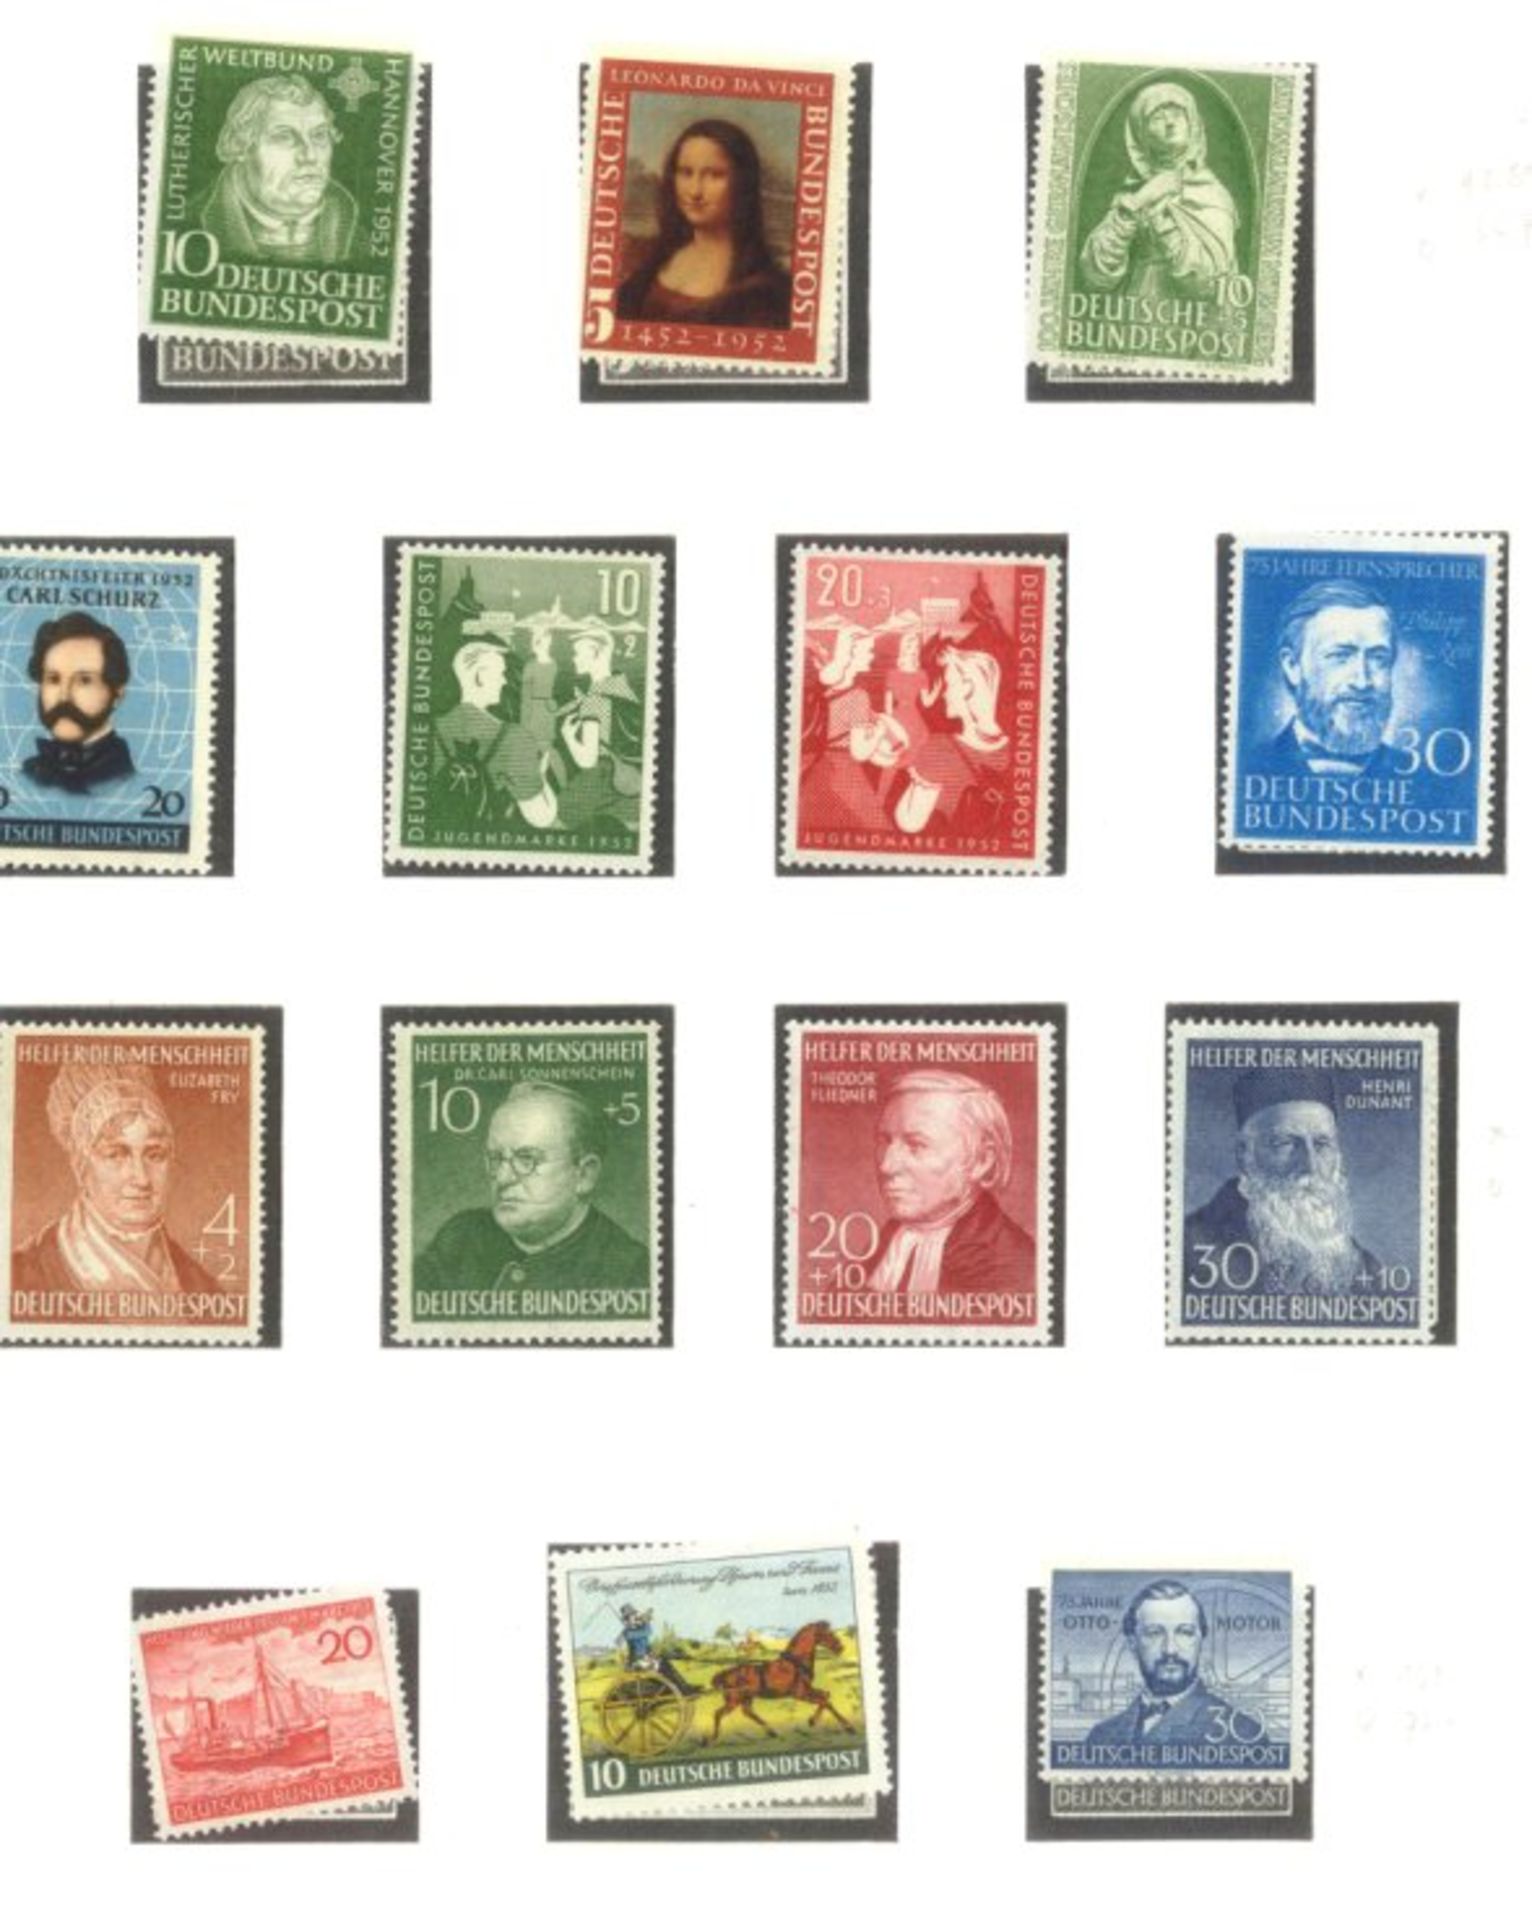 BUND 1949-1986sehr saubere postfrische Sammlung auf LINDNER -Falzlosblättern mit 3 Ringbindern. In - Bild 5 aus 9